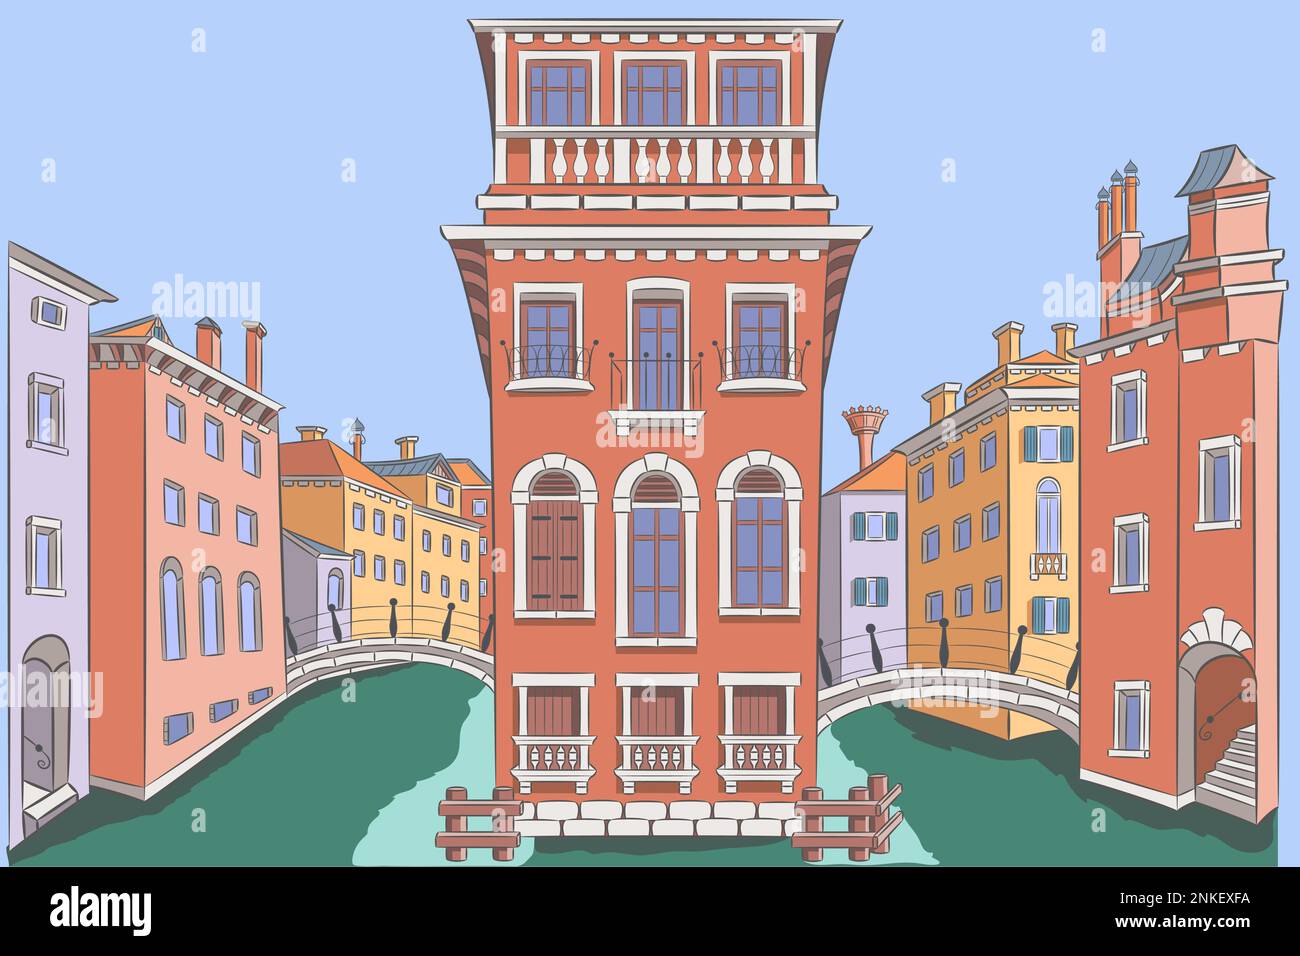 Dessin de vieilles maisons traditionnelles multicolores et de ponts au-dessus du canal. Italie. Illustration vectorielle. Illustration de Vecteur